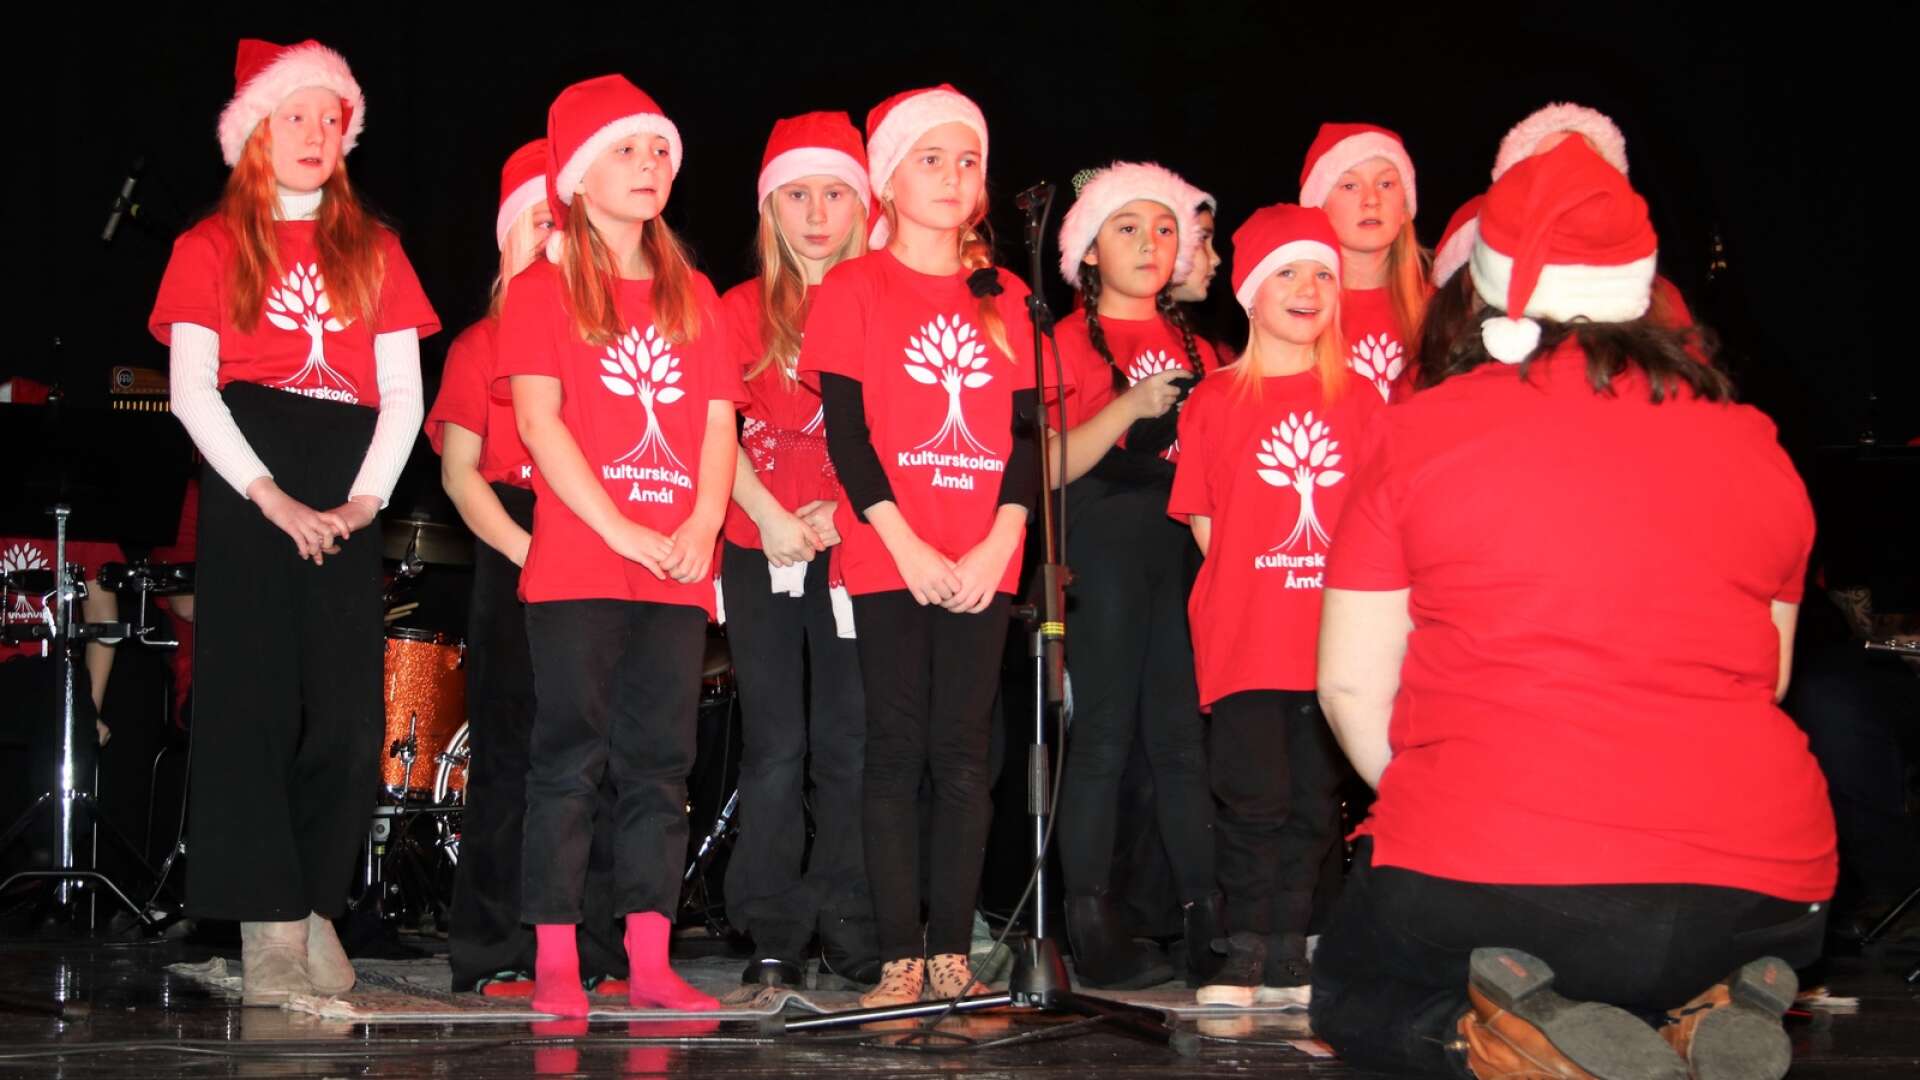 Frågan om avgift på kulturskolan debatterades i Åmåls kommunfullmäktige. Här en bild från kulturskolans julsaga på Karlbergsteatern.